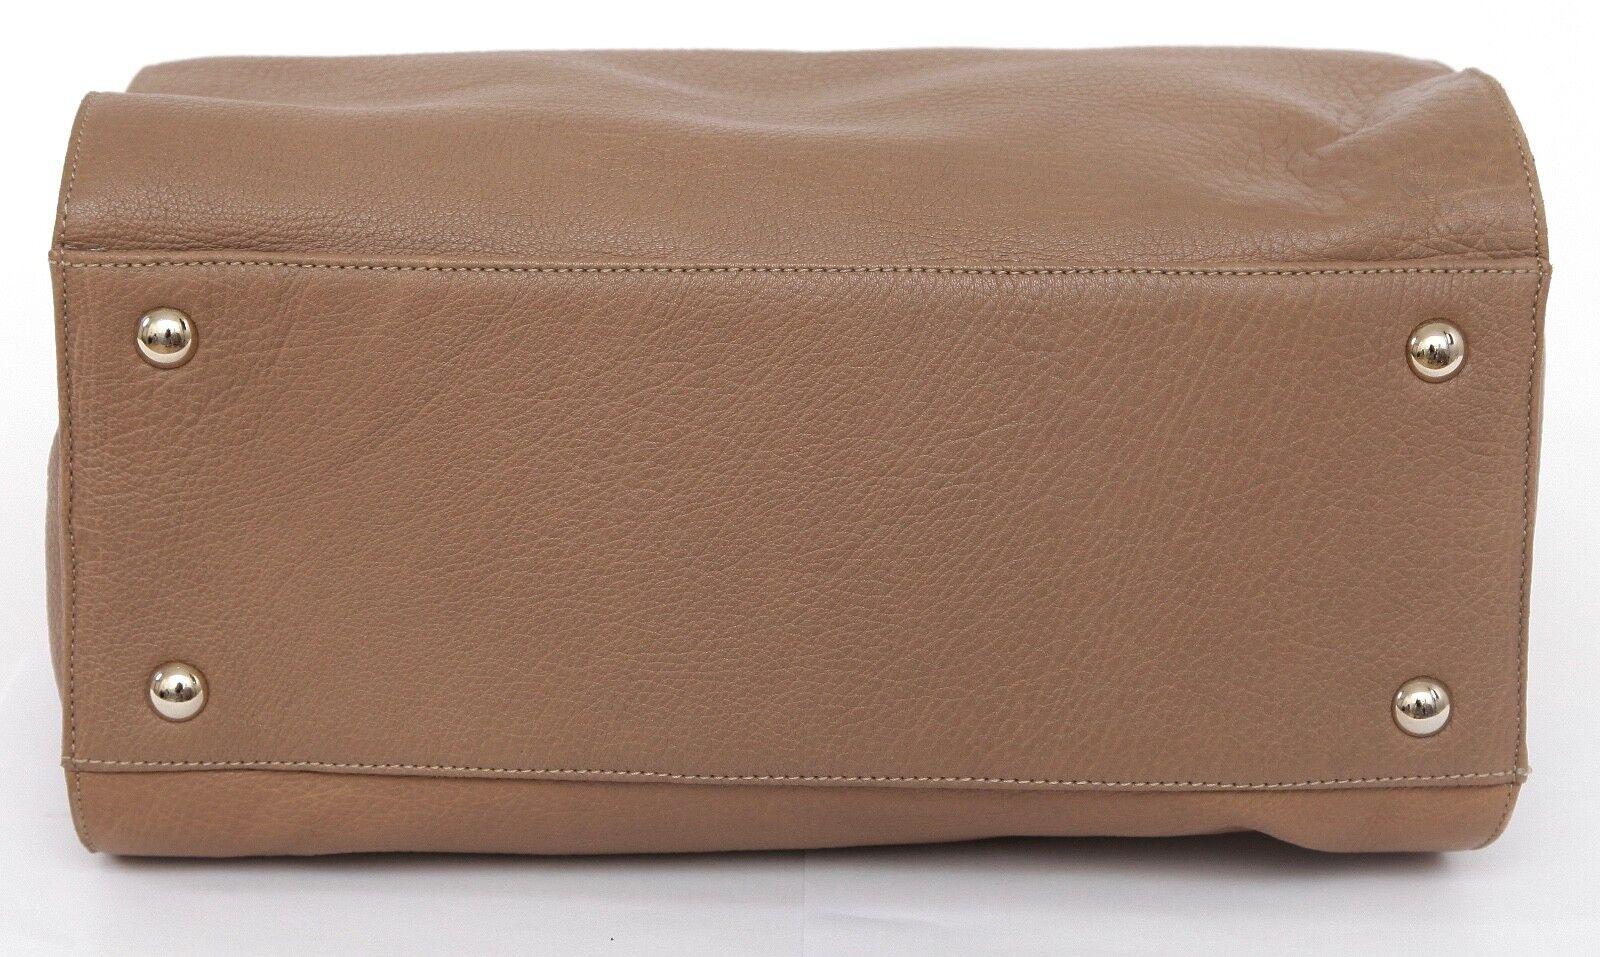 JIMMY CHOO Bag Tan Leather Large ROSABEL Satchel Tote Shoulder Strap Gold HW For Sale 3